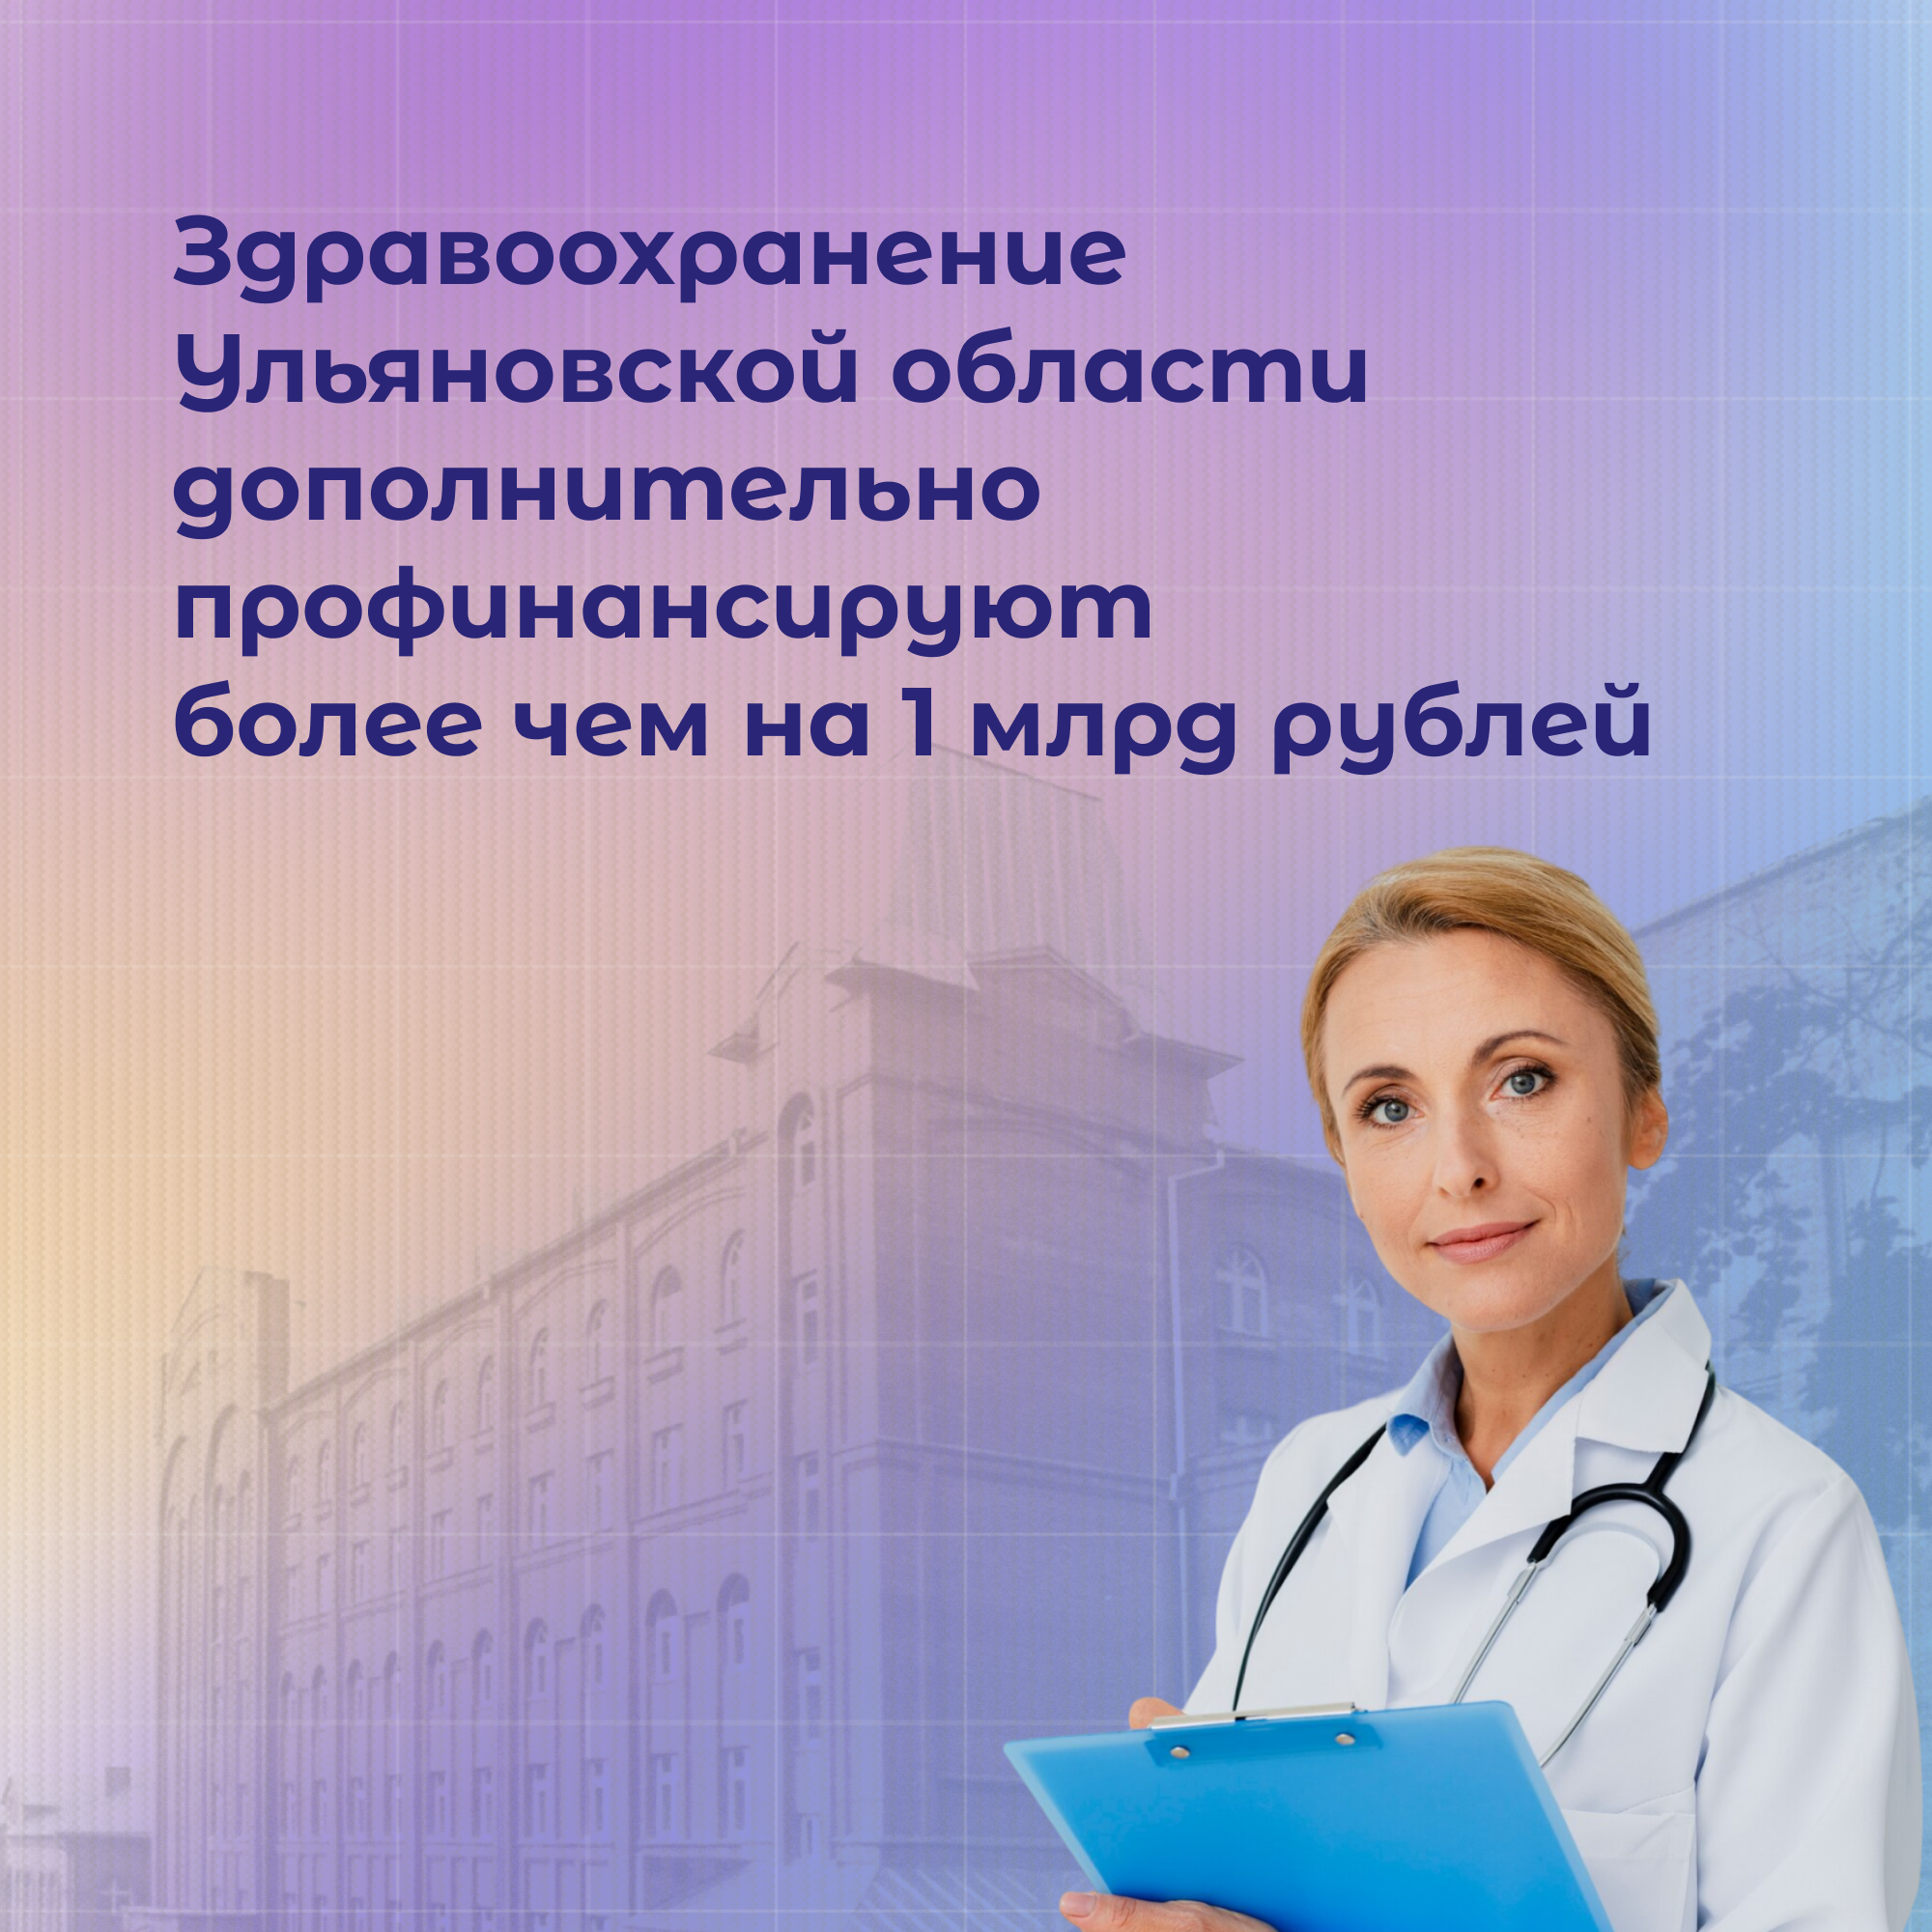 Более 1 млрд рублей дополнительных доходов будет направлено на здравоохранение.